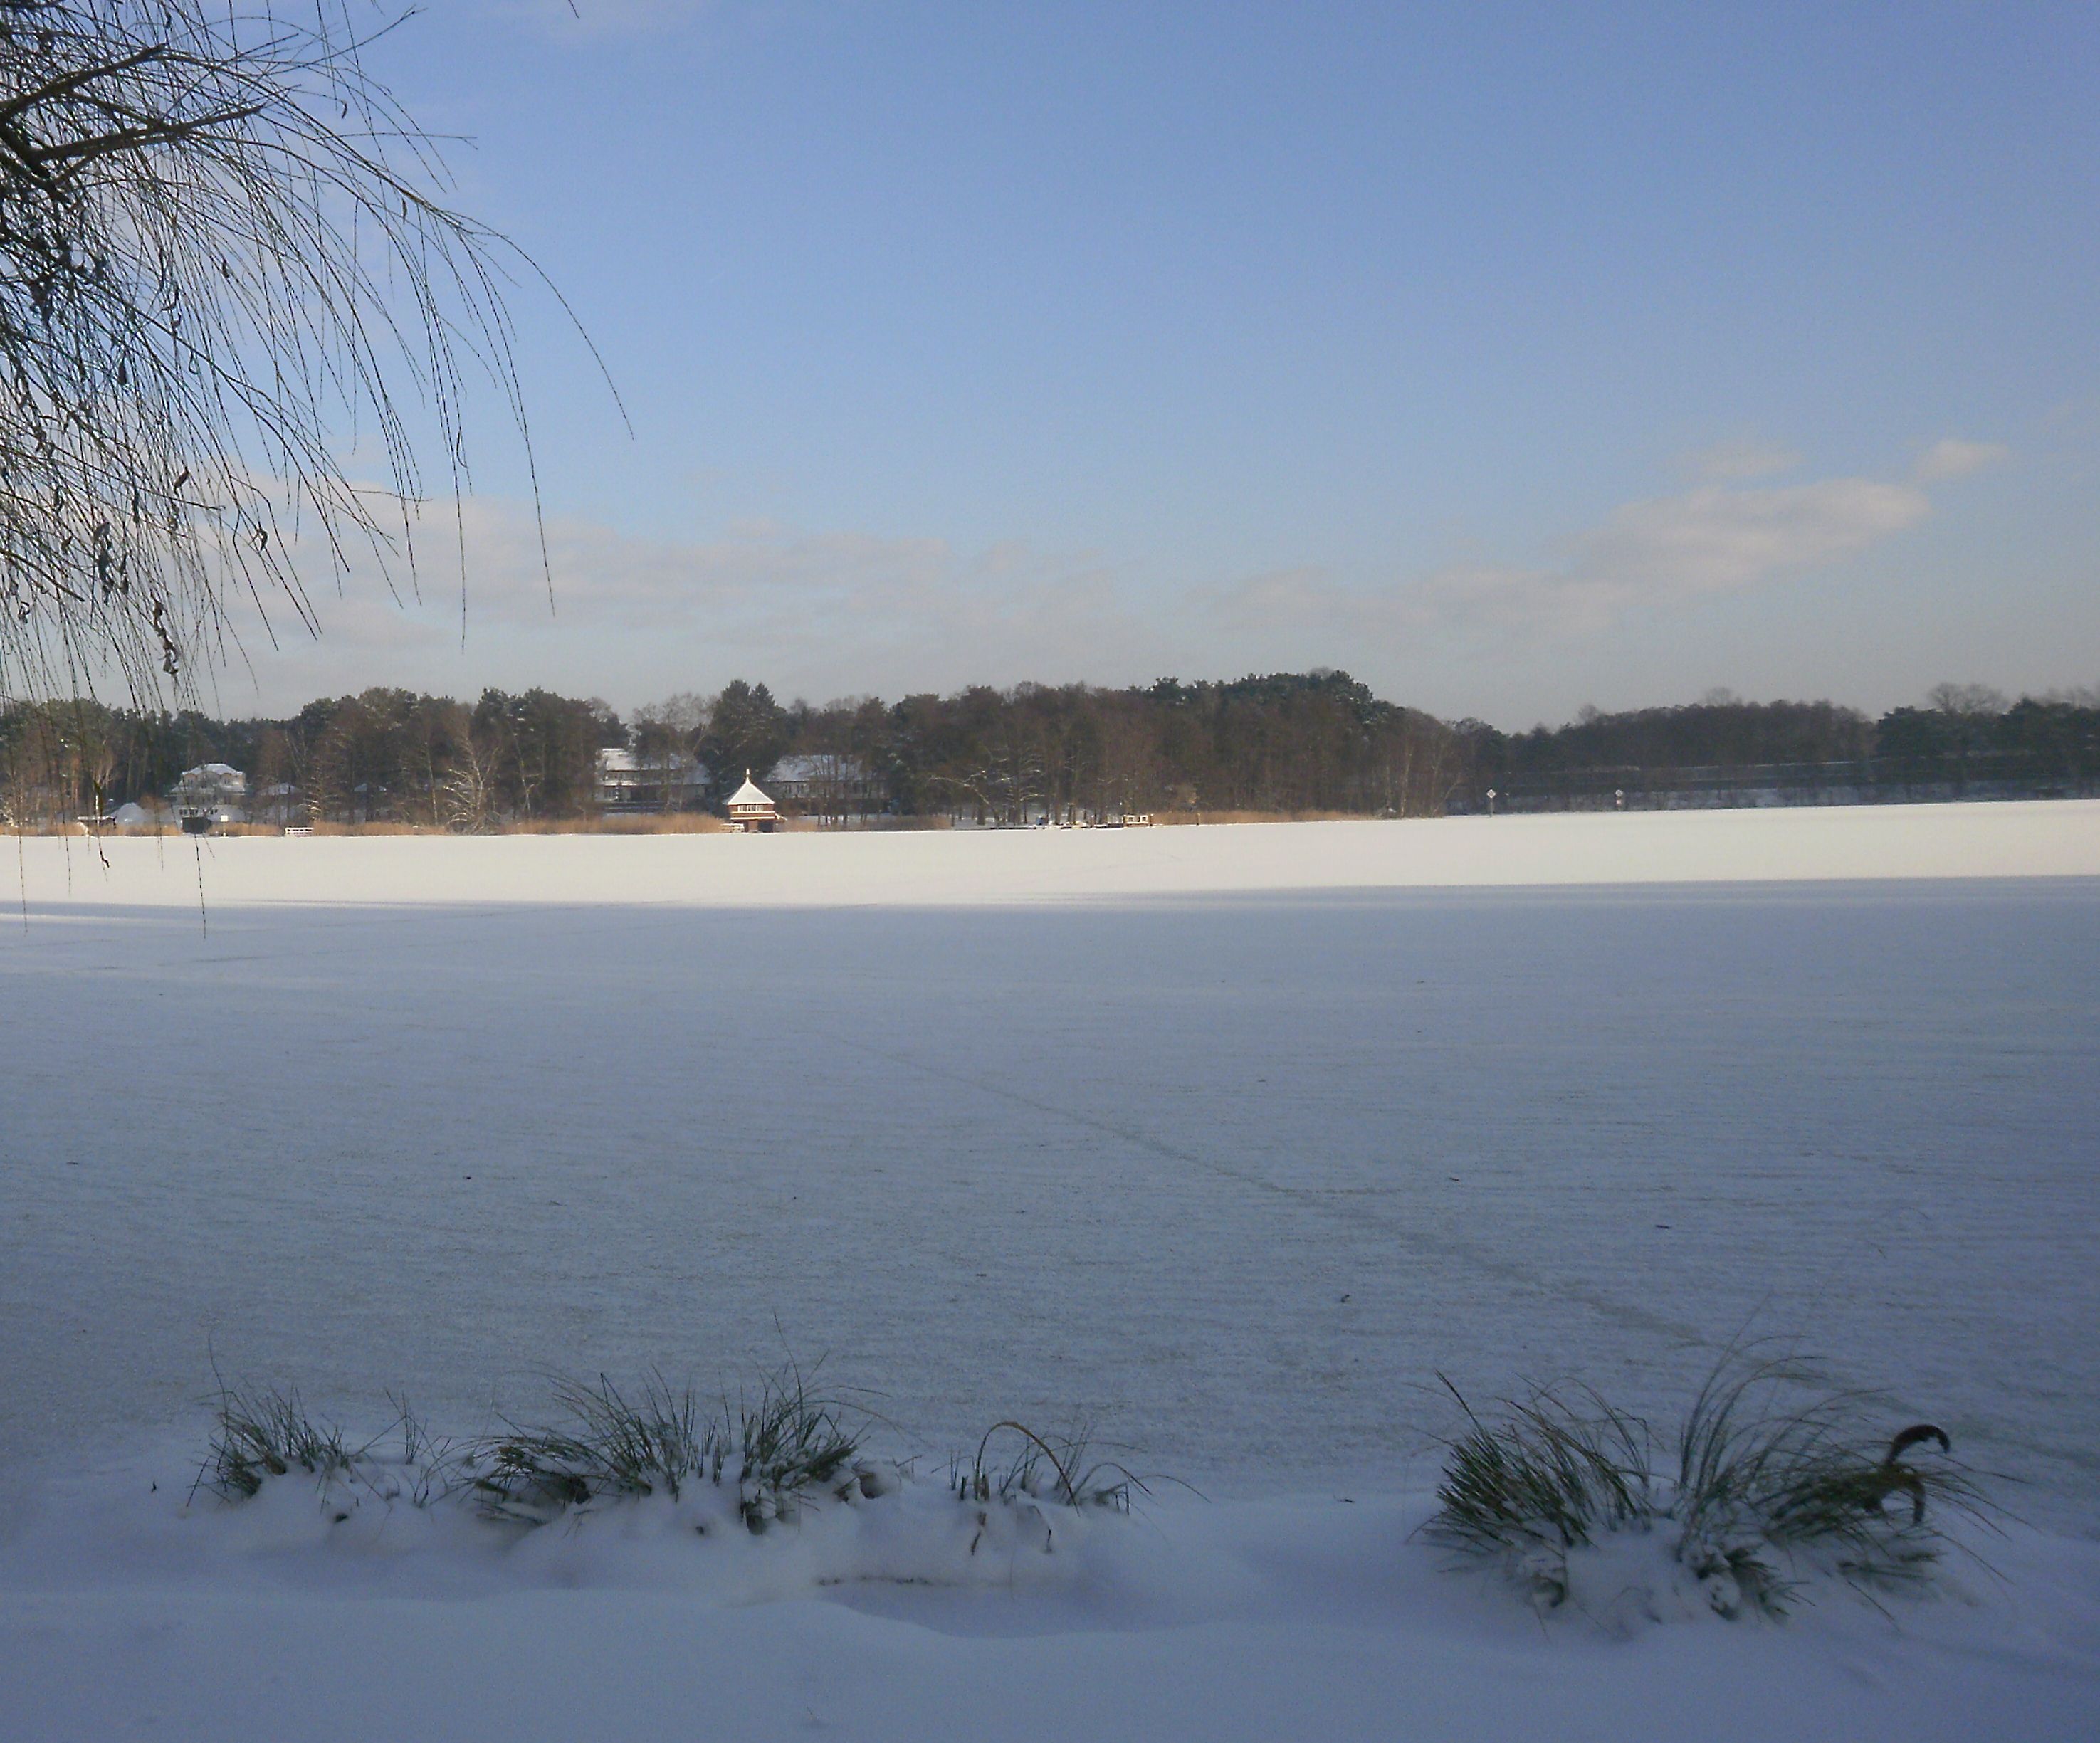 Aussicht auf den schneebedeckten See im Winter vom Ferienhaus Drei am Zemminsee aus